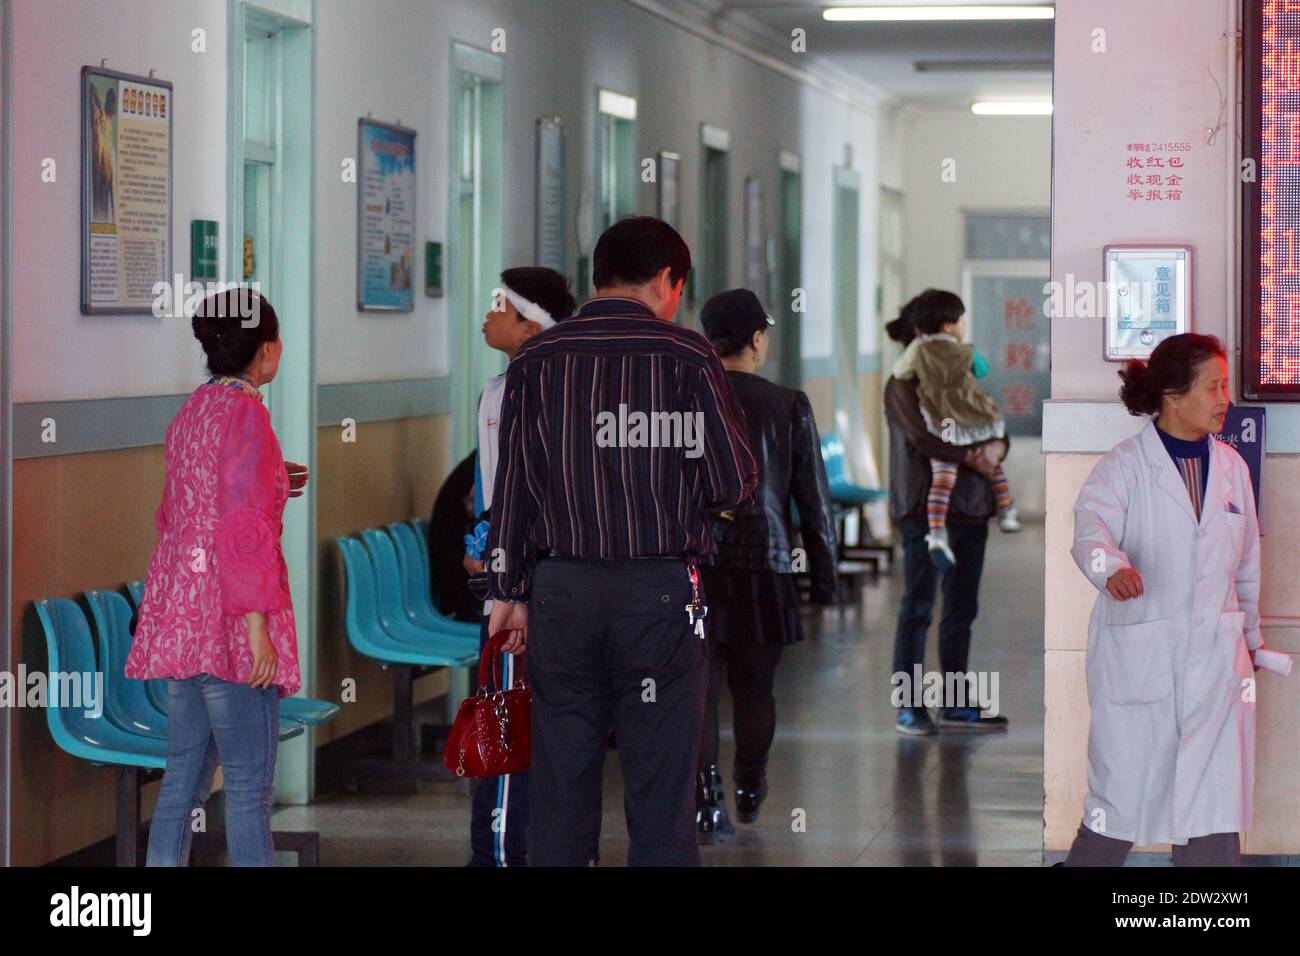 Dans les couloirs d'un hôpital chinois. Les patients attendent un rendez-vous. Hôpital de Tanggangzi. Anshan, province de Liaoning, Chine, Asie. Banque D'Images